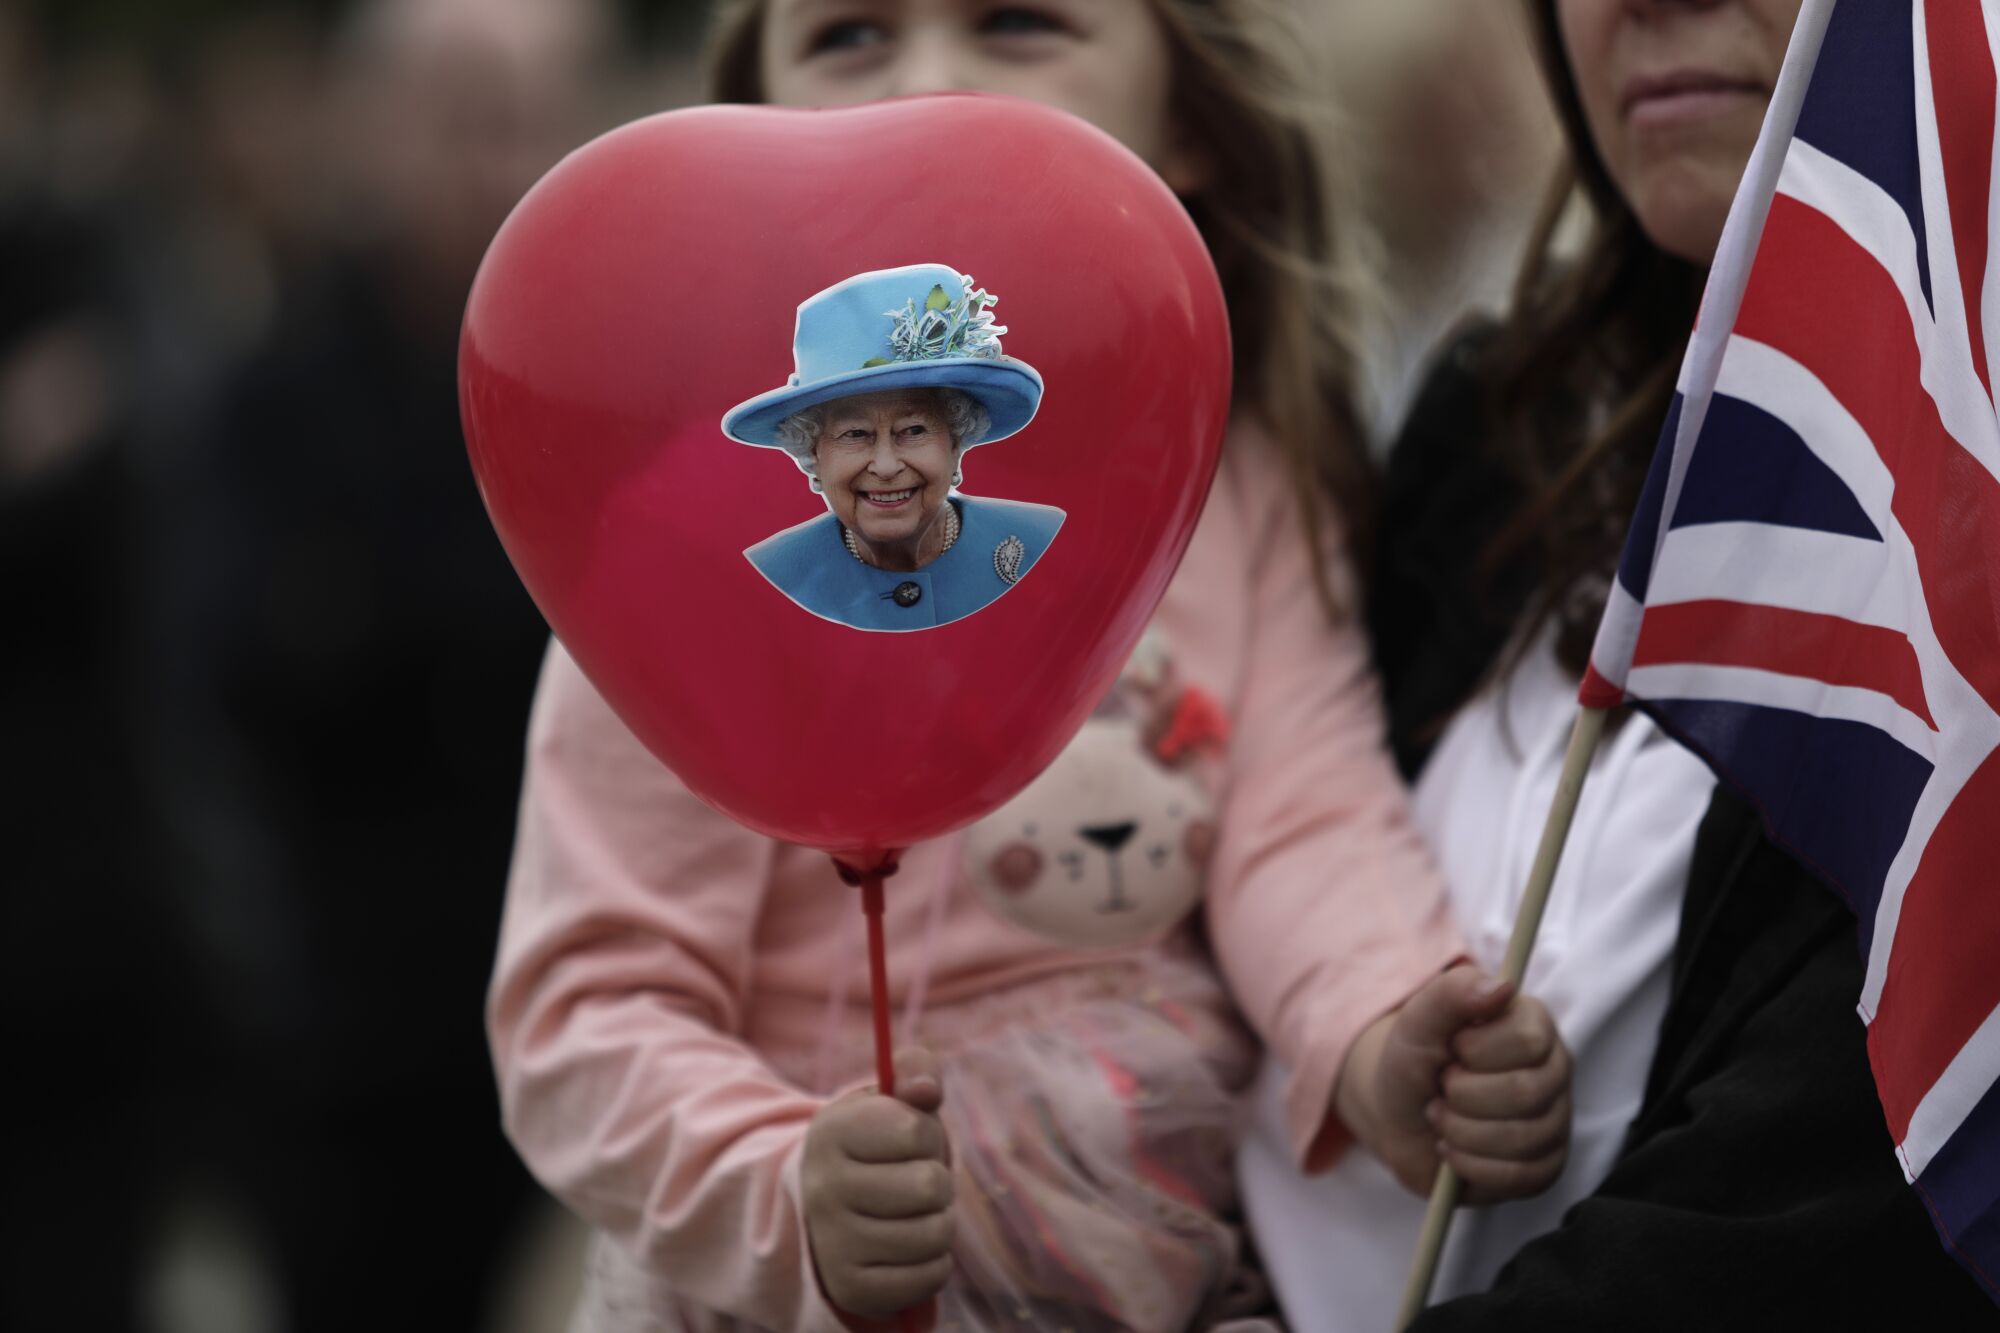 Bir kız elinde kraliçenin fotoğrafı ve Union Jack bayrağı olan bir balon tutuyor.